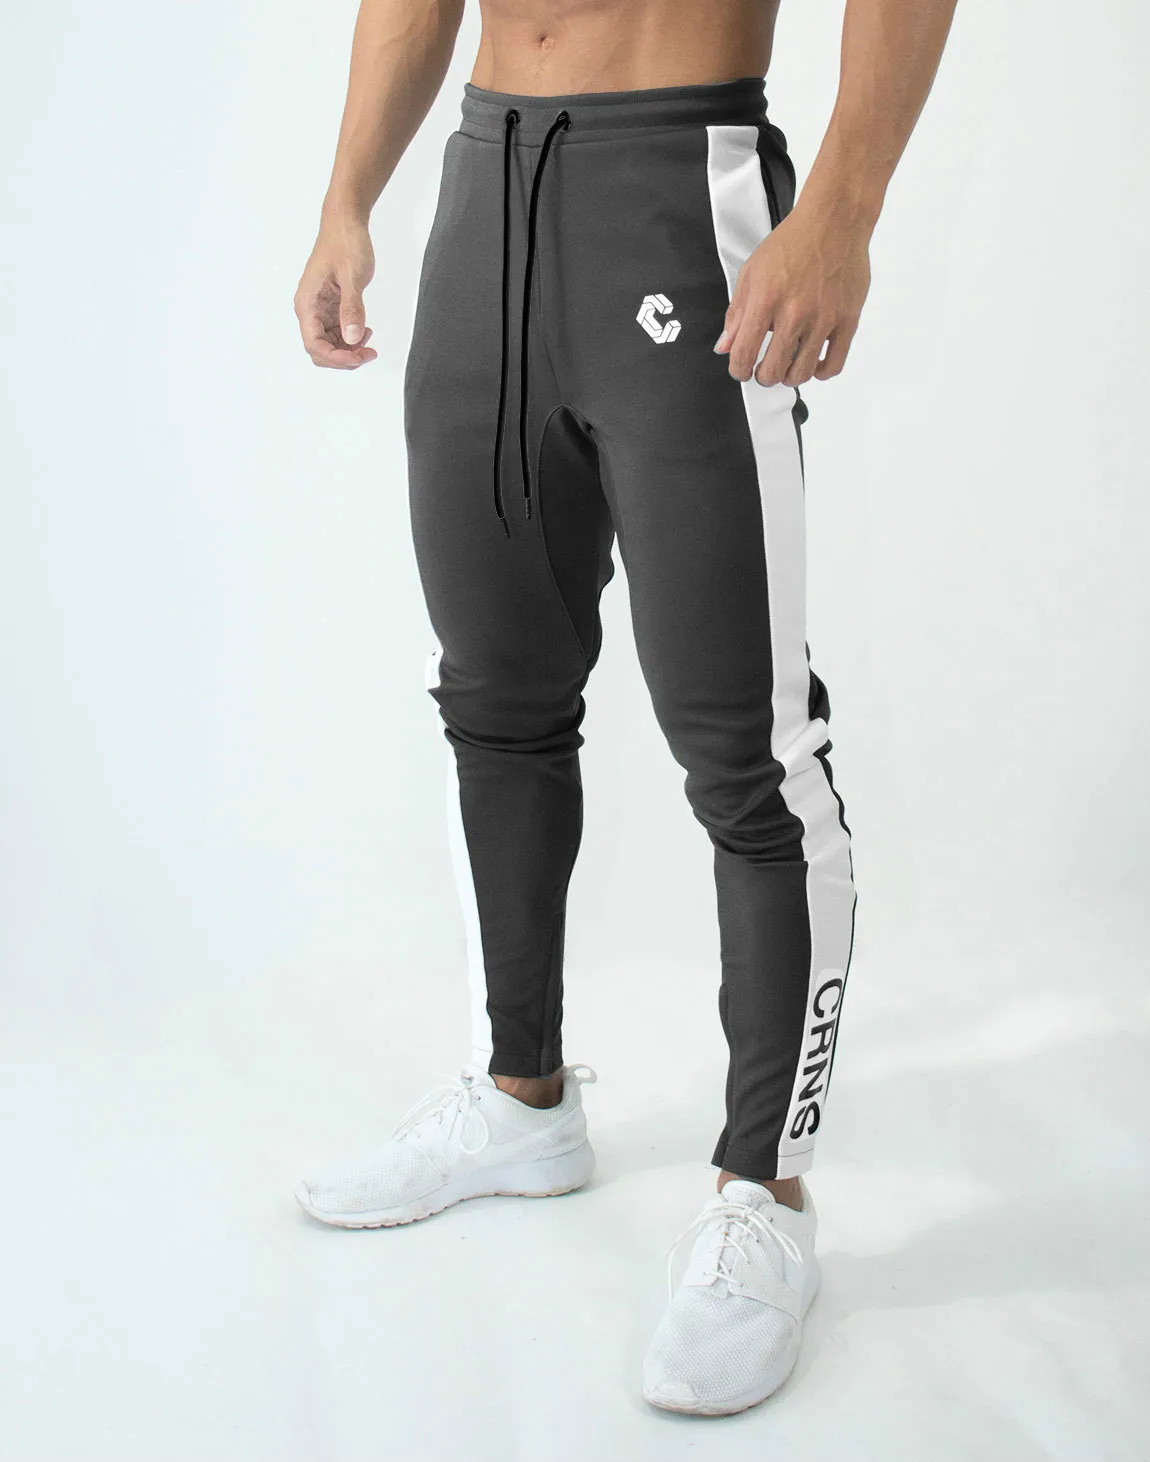 Мужские повседневные брюки для пробежек, фитнеса, мужская спортивная одежда, обтягивающие спортивные штаны, модные спортивные штаны для бега